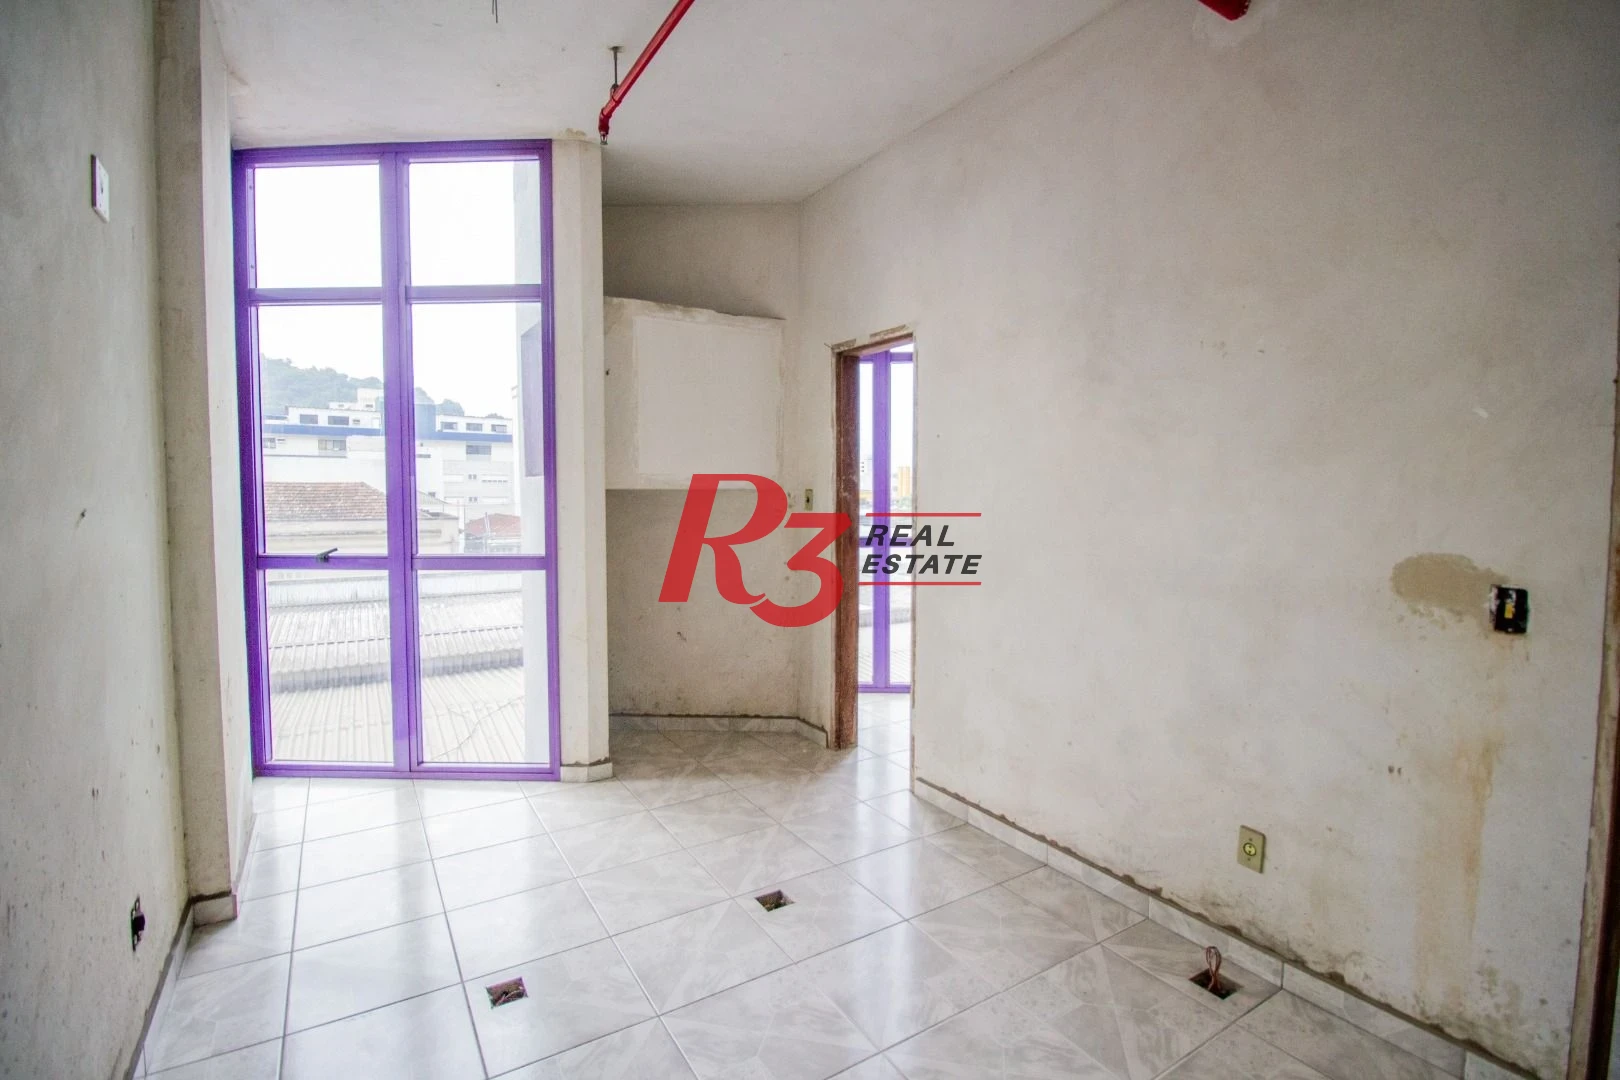 Sala à venda, 43 m² por R$ 320.000,00 - Encruzilhada - Santos/SP